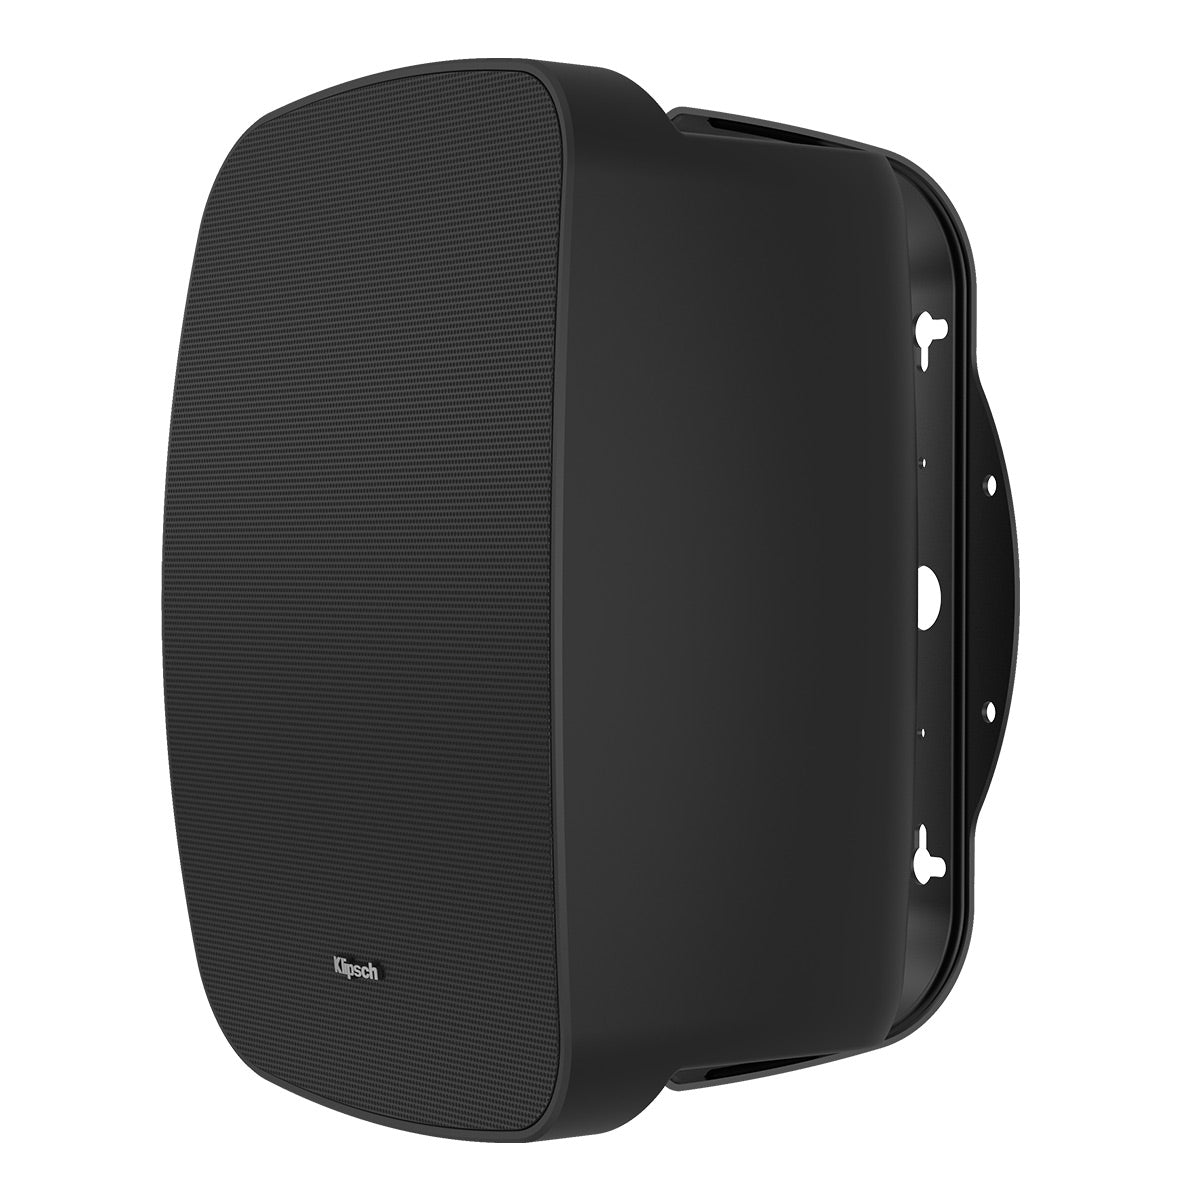 Klipsch RSM-525 Indoor/Outdoor Surface Mount Speakers with 5.25" Woofer - Pair (Black)